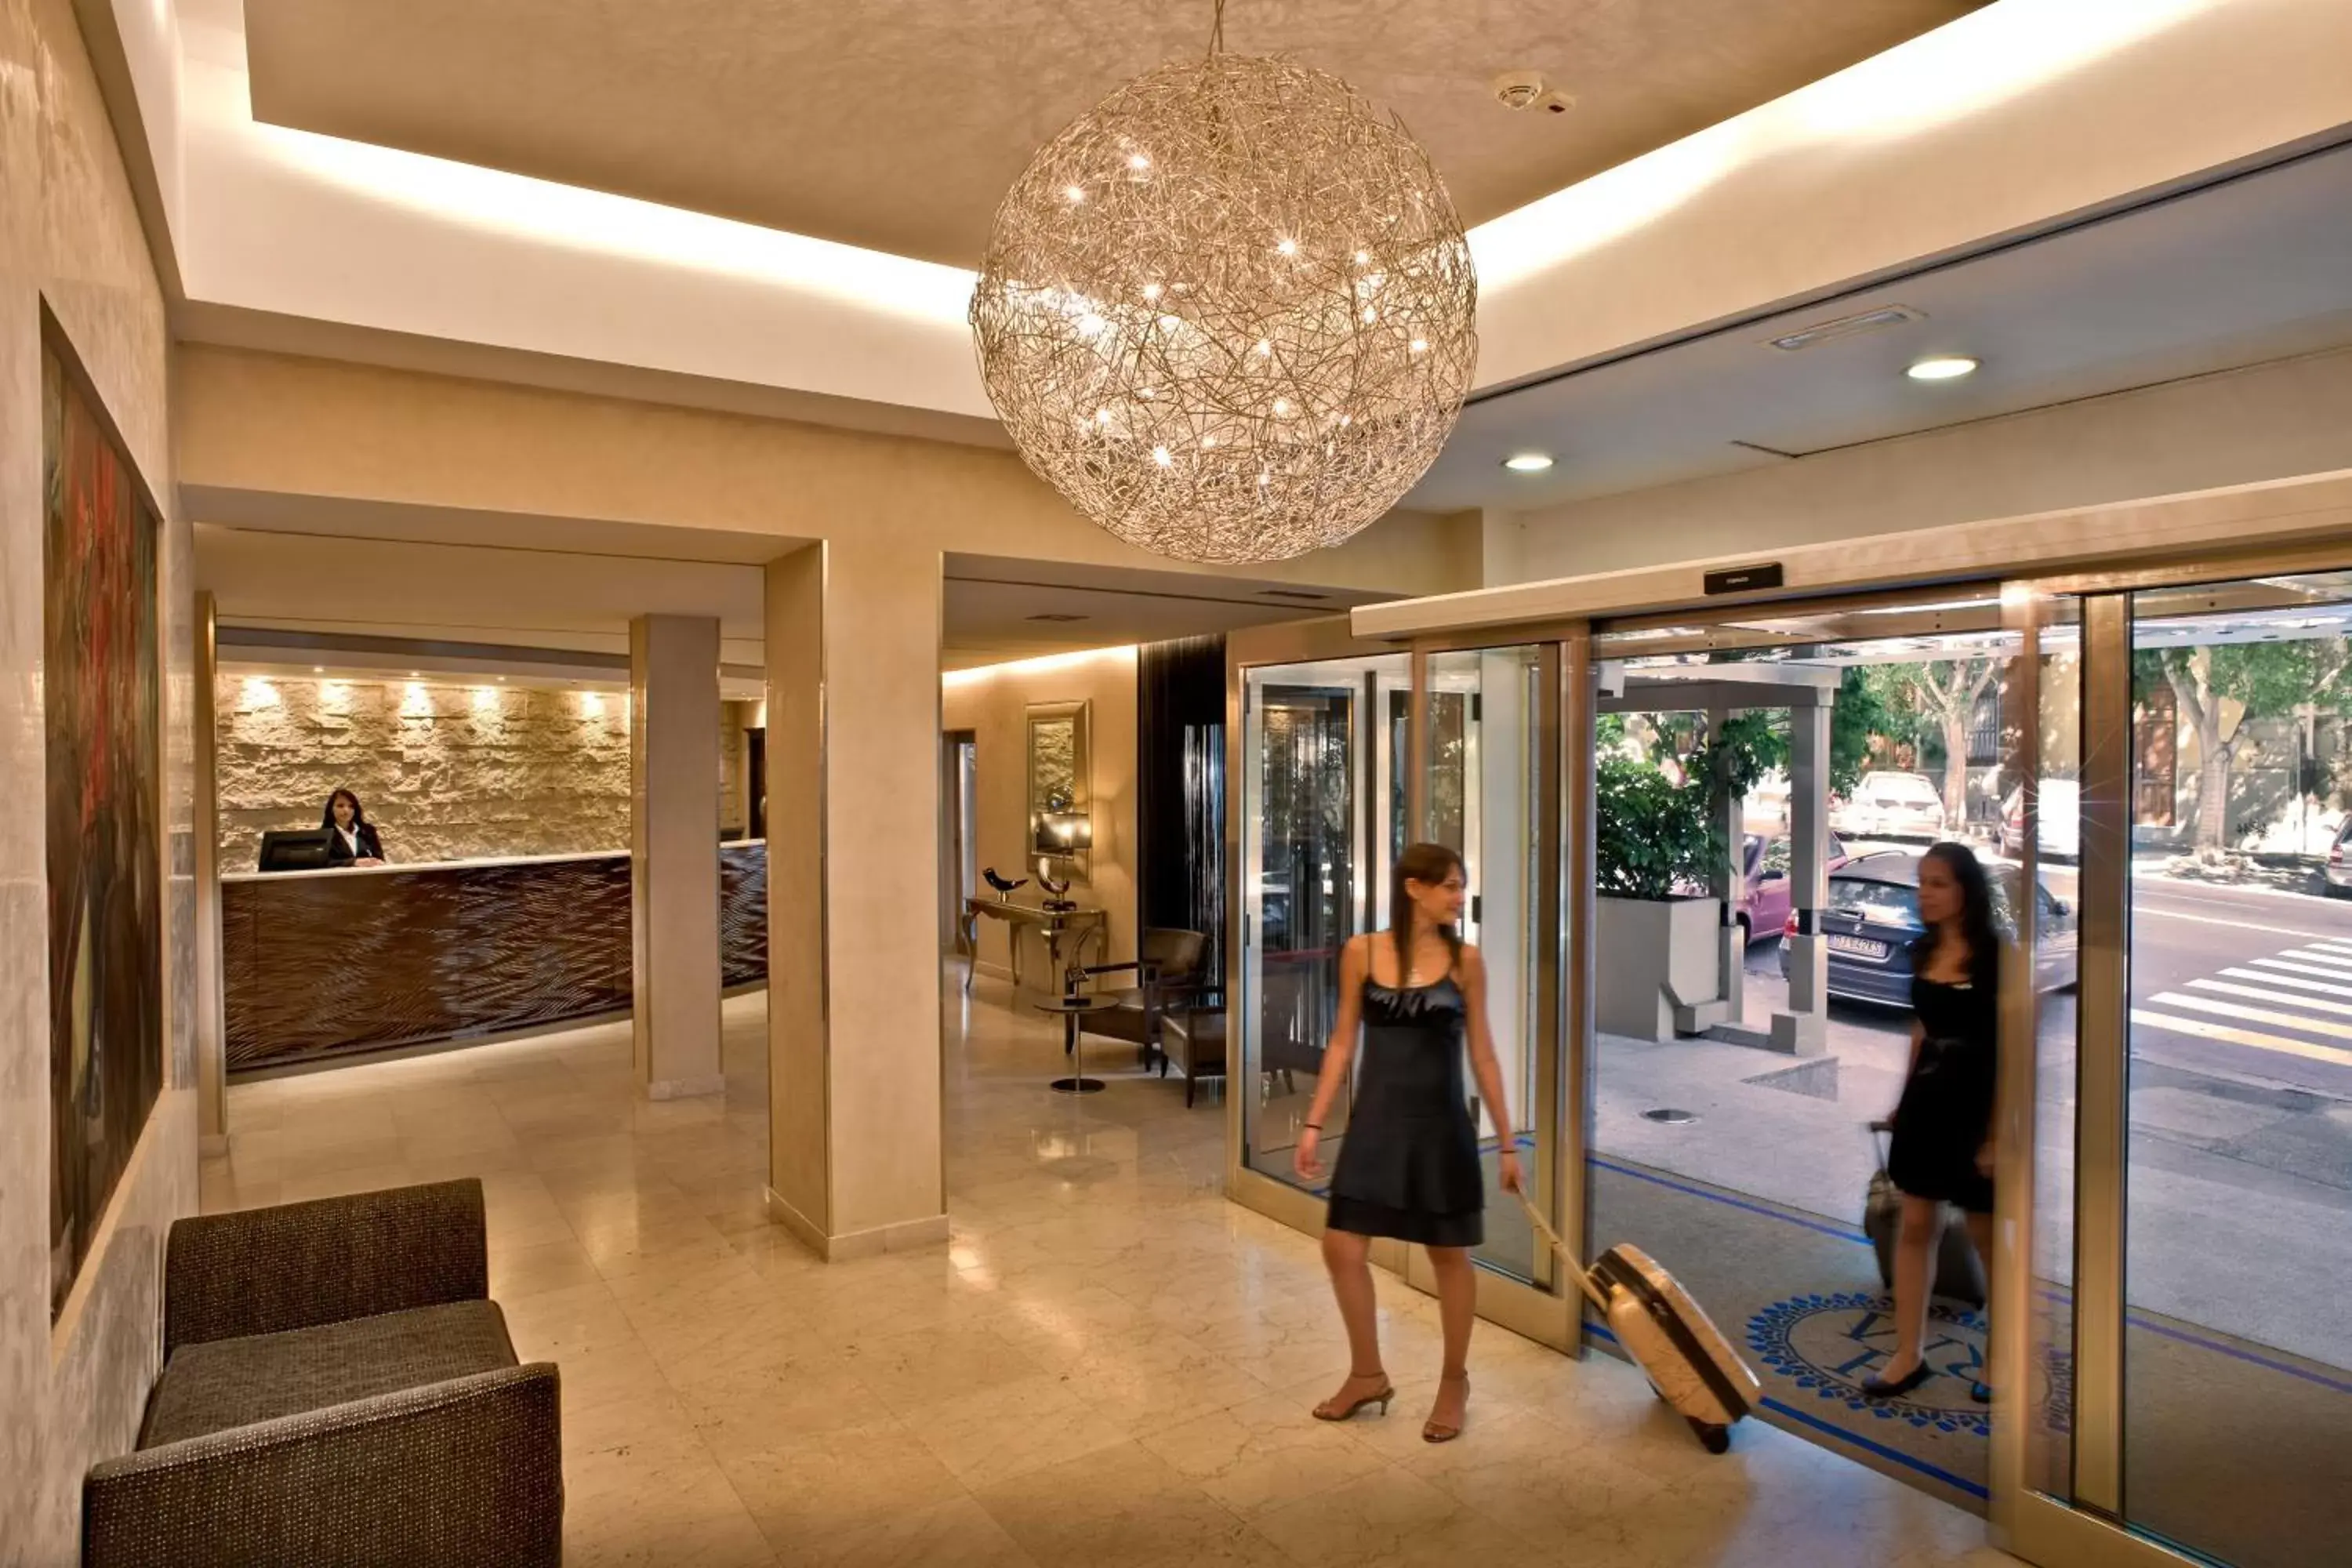 Lobby or reception, Fitness Center/Facilities in Hotel Regina Margherita